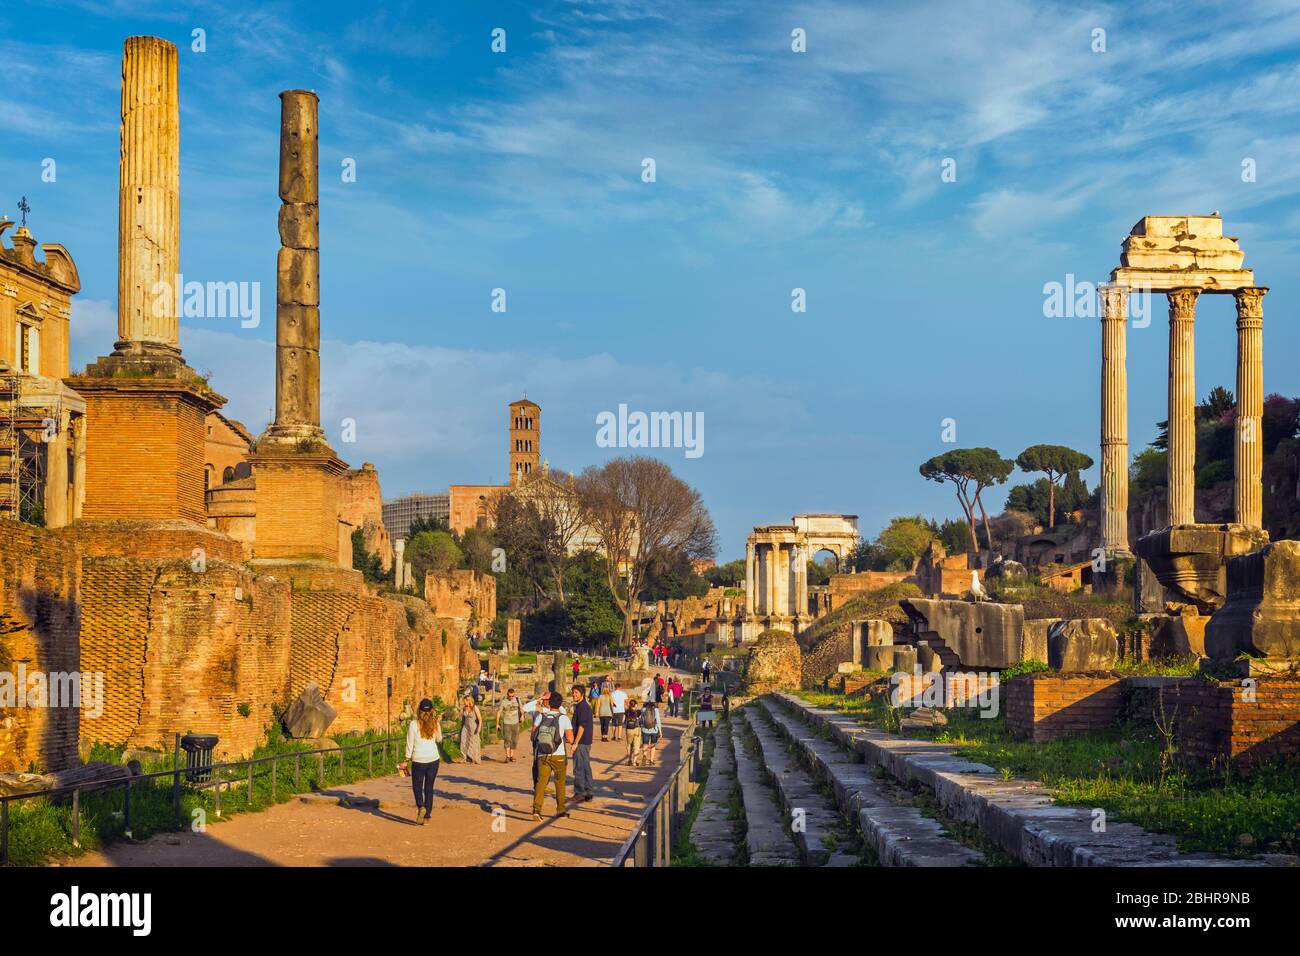 Rome, Italie. Le Forum romain. Vue générale du Forum romain. Les trois colonnes à droite sont les restes du Temple de Castor et de Pollux (te Banque D'Images